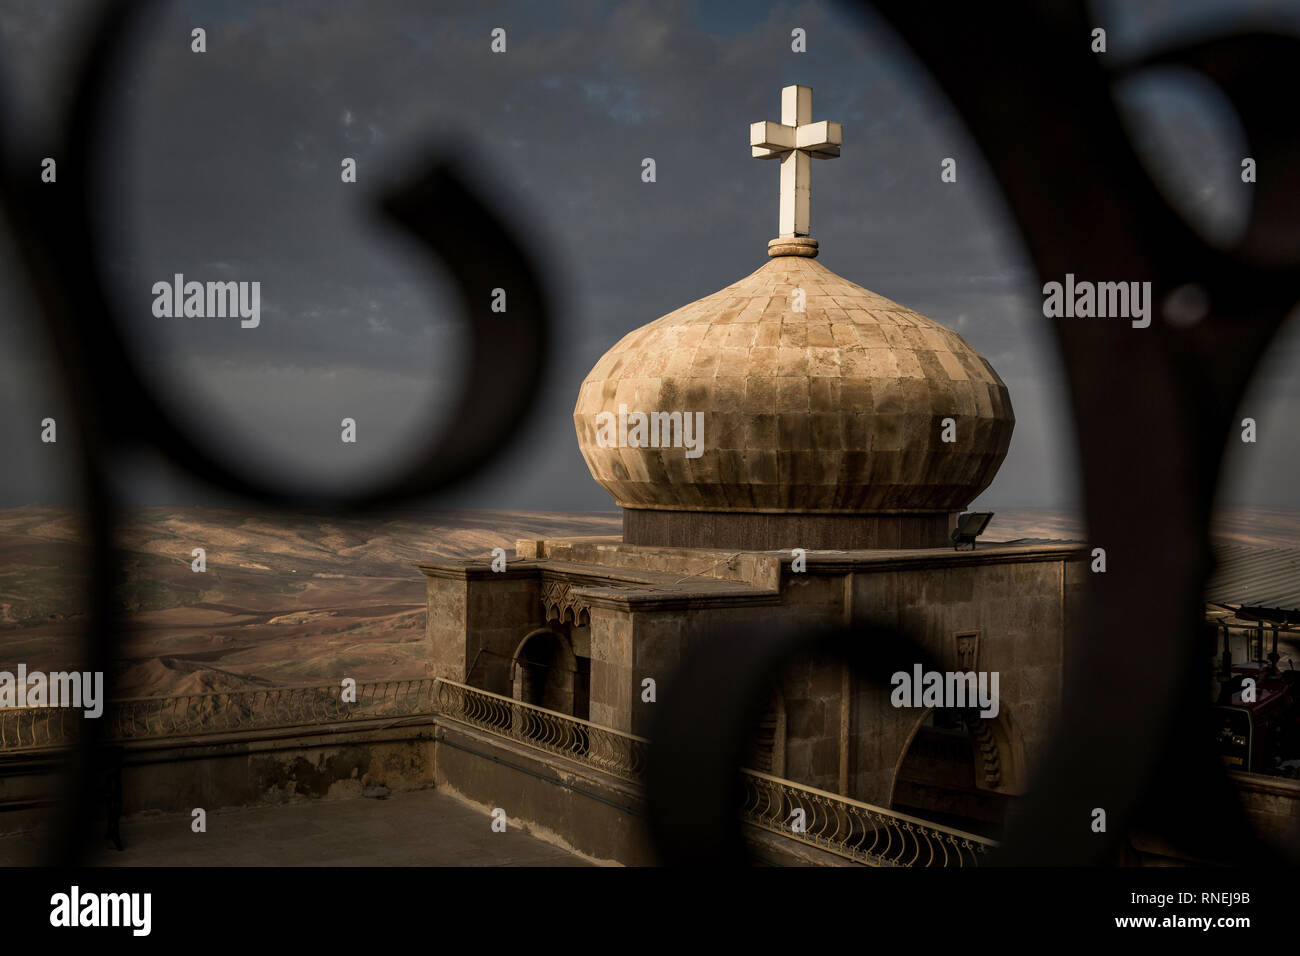 20 Kilometer von Mossul auf dem Berg Dschabal Alfaf im Nordirak ist eines der ältesten christlichen Klöster der Welt. Aufgrund seiner Bedeutung das Kloster zusammen mit einigen umliegenden Dörfern bildet eine der drei Erz Pfarreien der Syrisch-orthodoxen Kirche im Irak. Bis 2017 wurde das Kloster durch die bedroht ist. Stockfoto